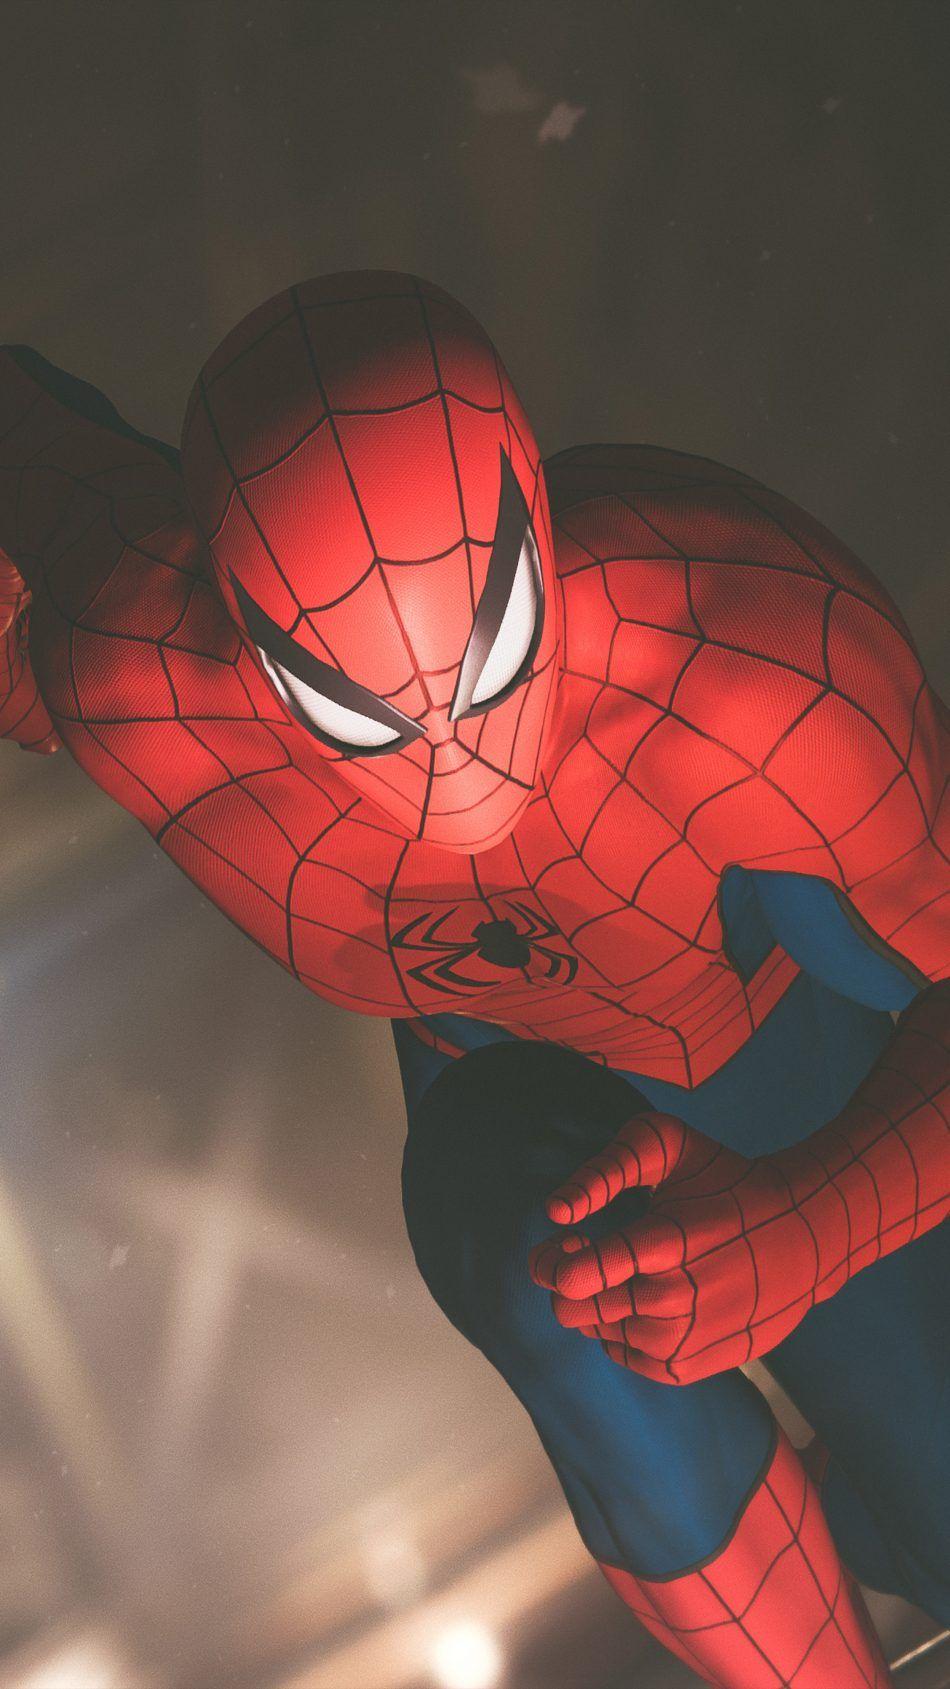 Spider Man Running Playstation 4 Game 4K Ultra HD Mobile Wallpaper. Spiderman, Marvel spiderman, Marvel wallpaper